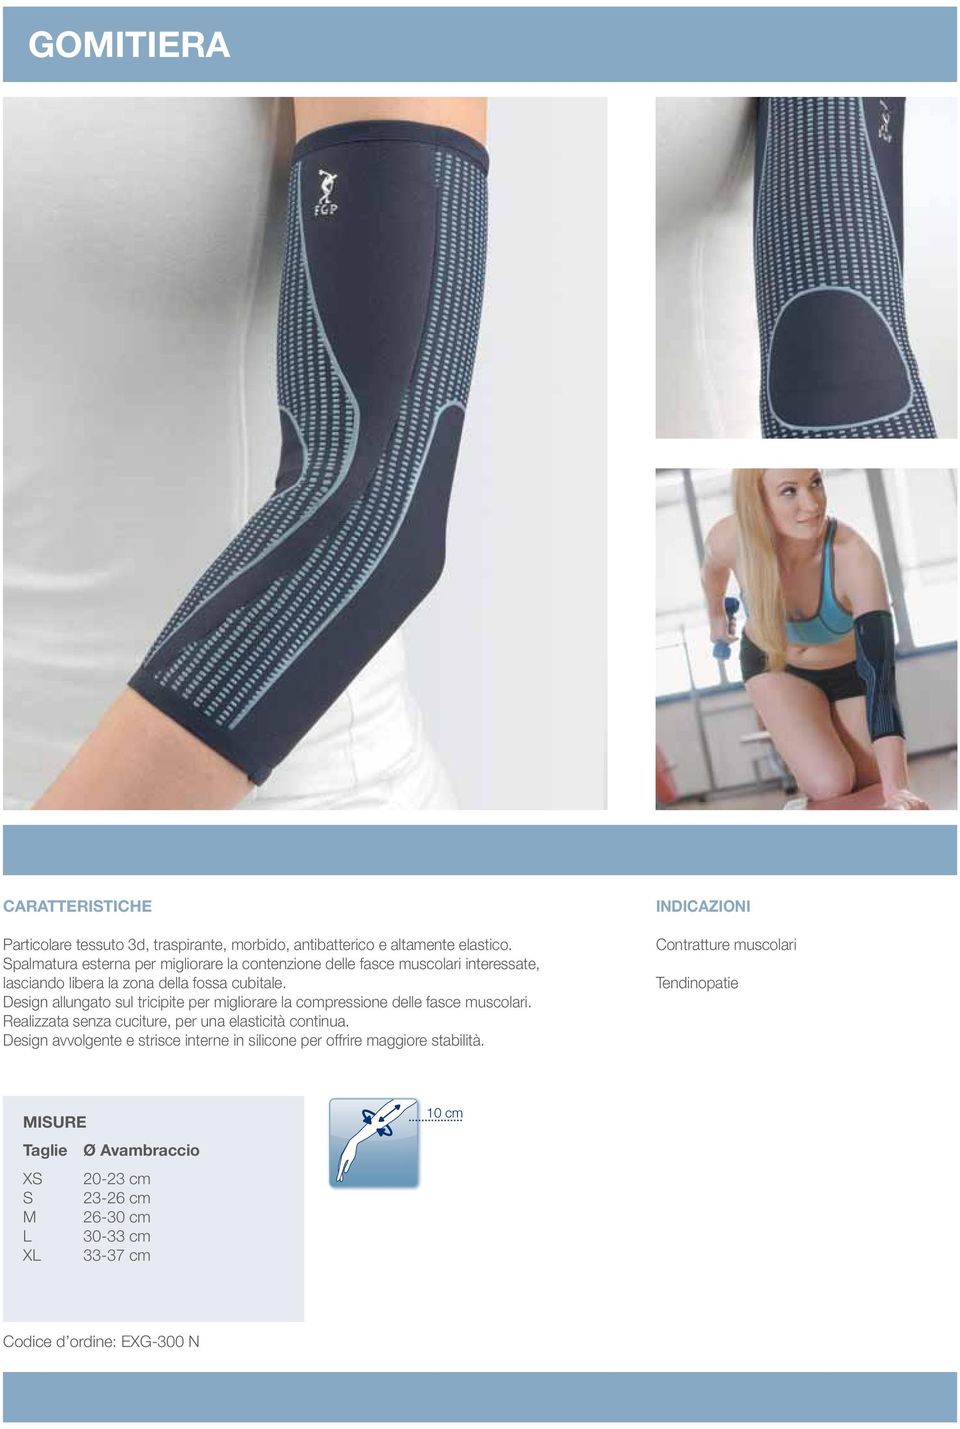 Design allungato sul tricipite per migliorare la compressione delle fasce muscolari.